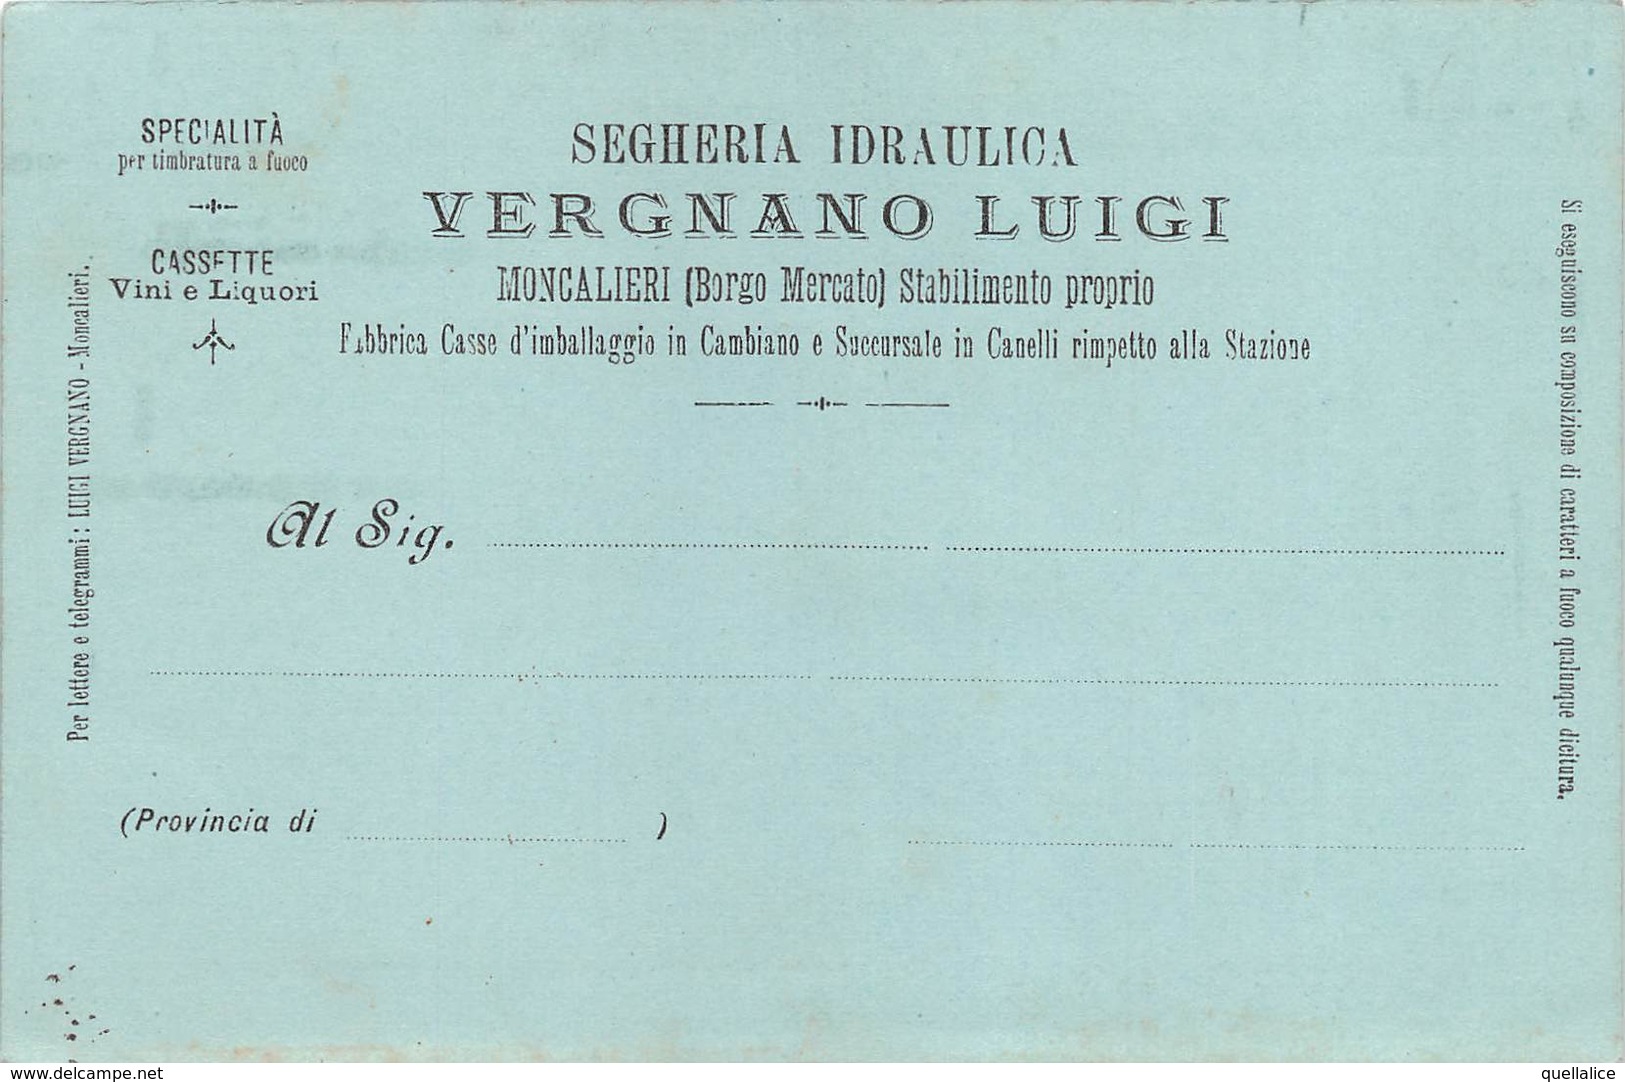 0258 "(TO) MONCALIERI-BORGO MEERCATO-SEGHERIA IDRAULICA VERGNANO LUIGI-SPECIALITA' TIMBRATURA A FUOCO" CART SPED 1903 - Mercaderes